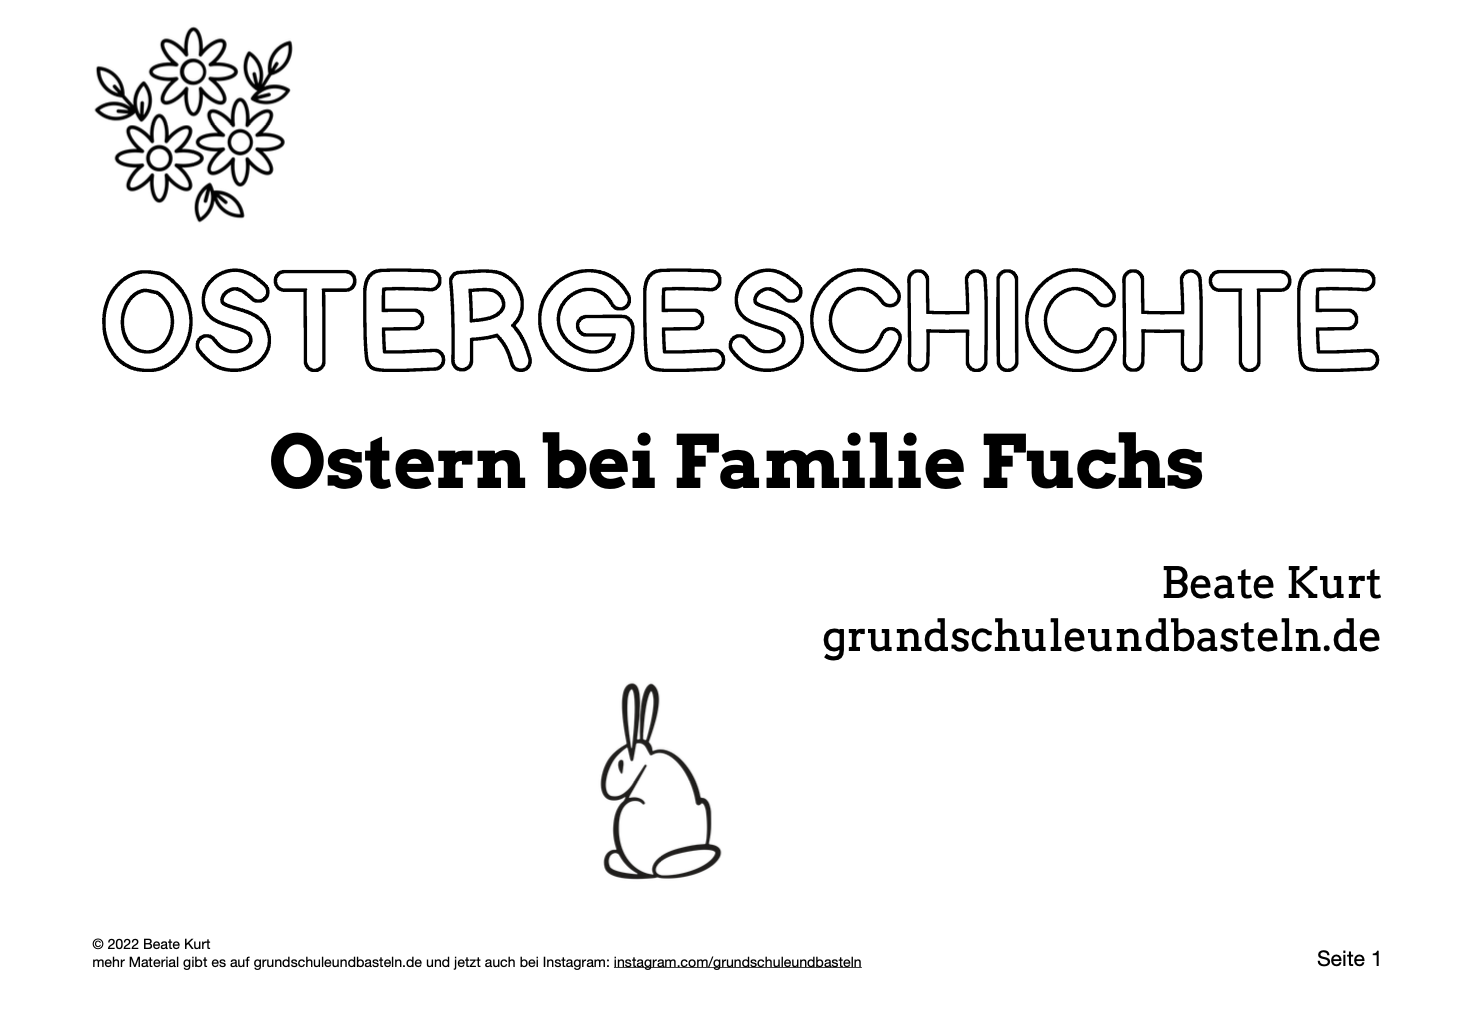  Ostergeschichte: Ostern bei Familie Fuchs 